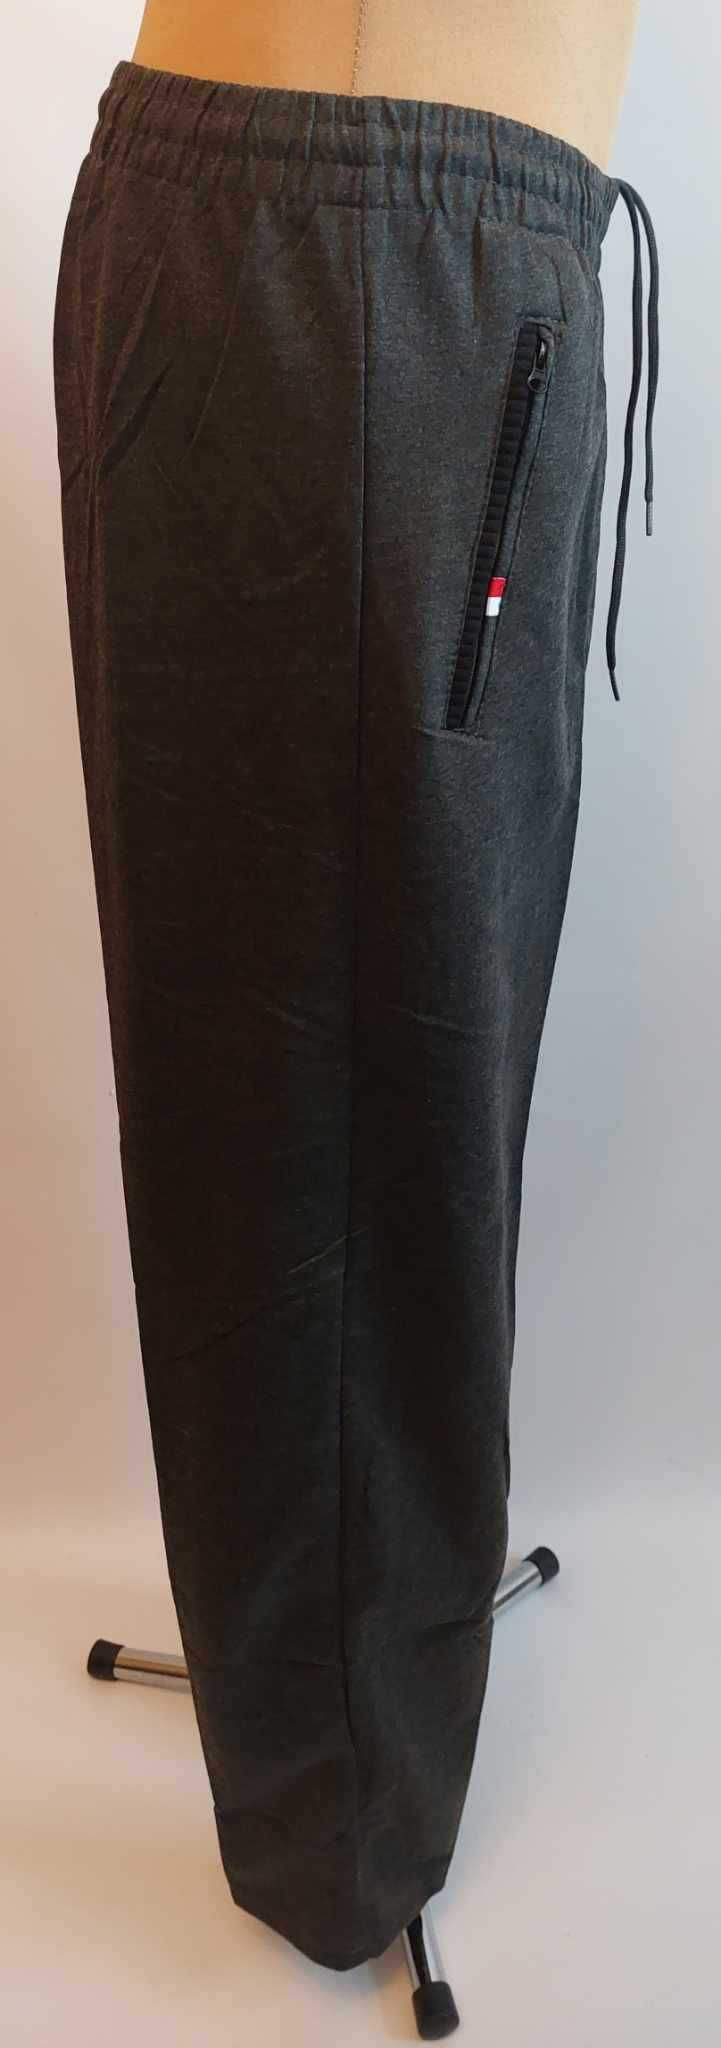 Spodnie męskie dresowe grafit bez ściągaczy LINTEBOB Y-47169-LK r 5 XL